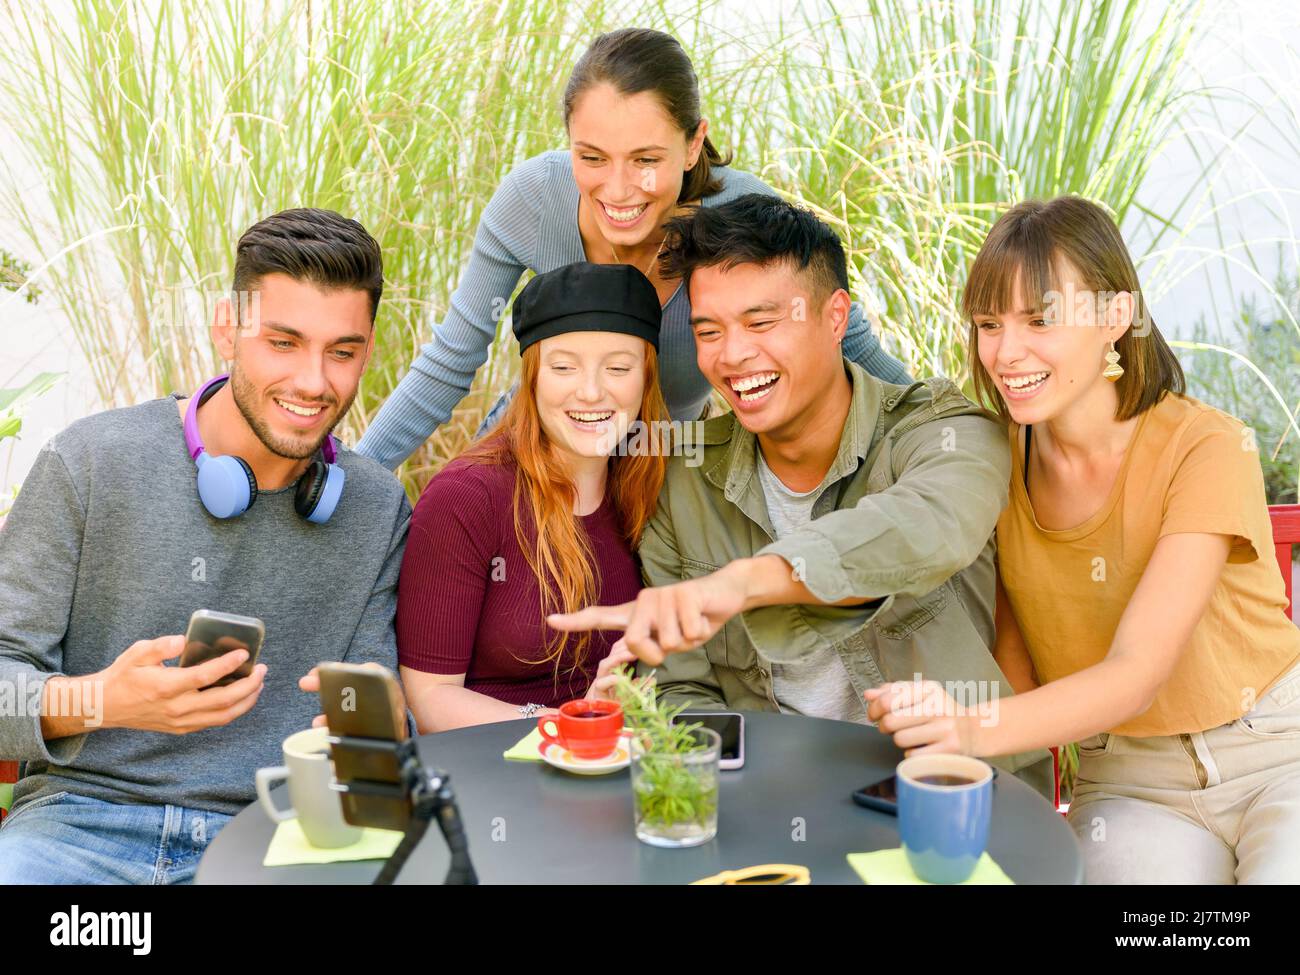 Eine Gruppe reizender, vielfältiger Menschen, die im Straßencafé am Tisch sitzen und während eines Videochats mit Freunden sprechen Stockfoto